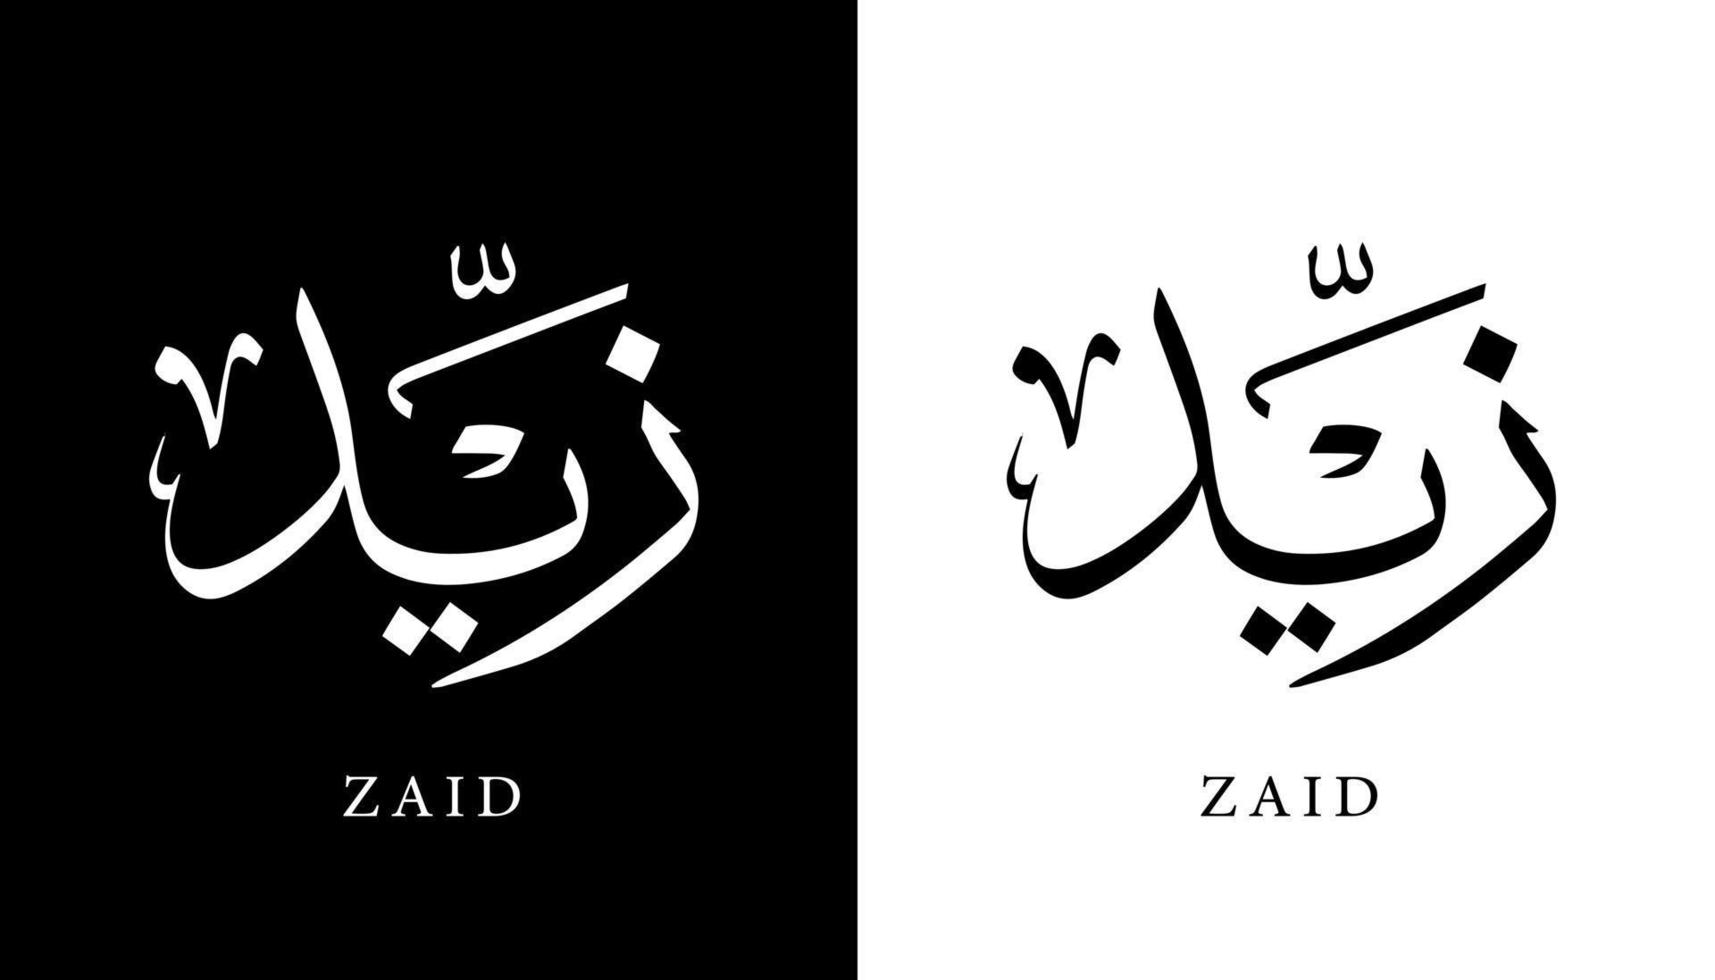 nome della calligrafia araba tradotto 'zaid' lettere arabe alfabeto font lettering logo islamico illustrazione vettoriale